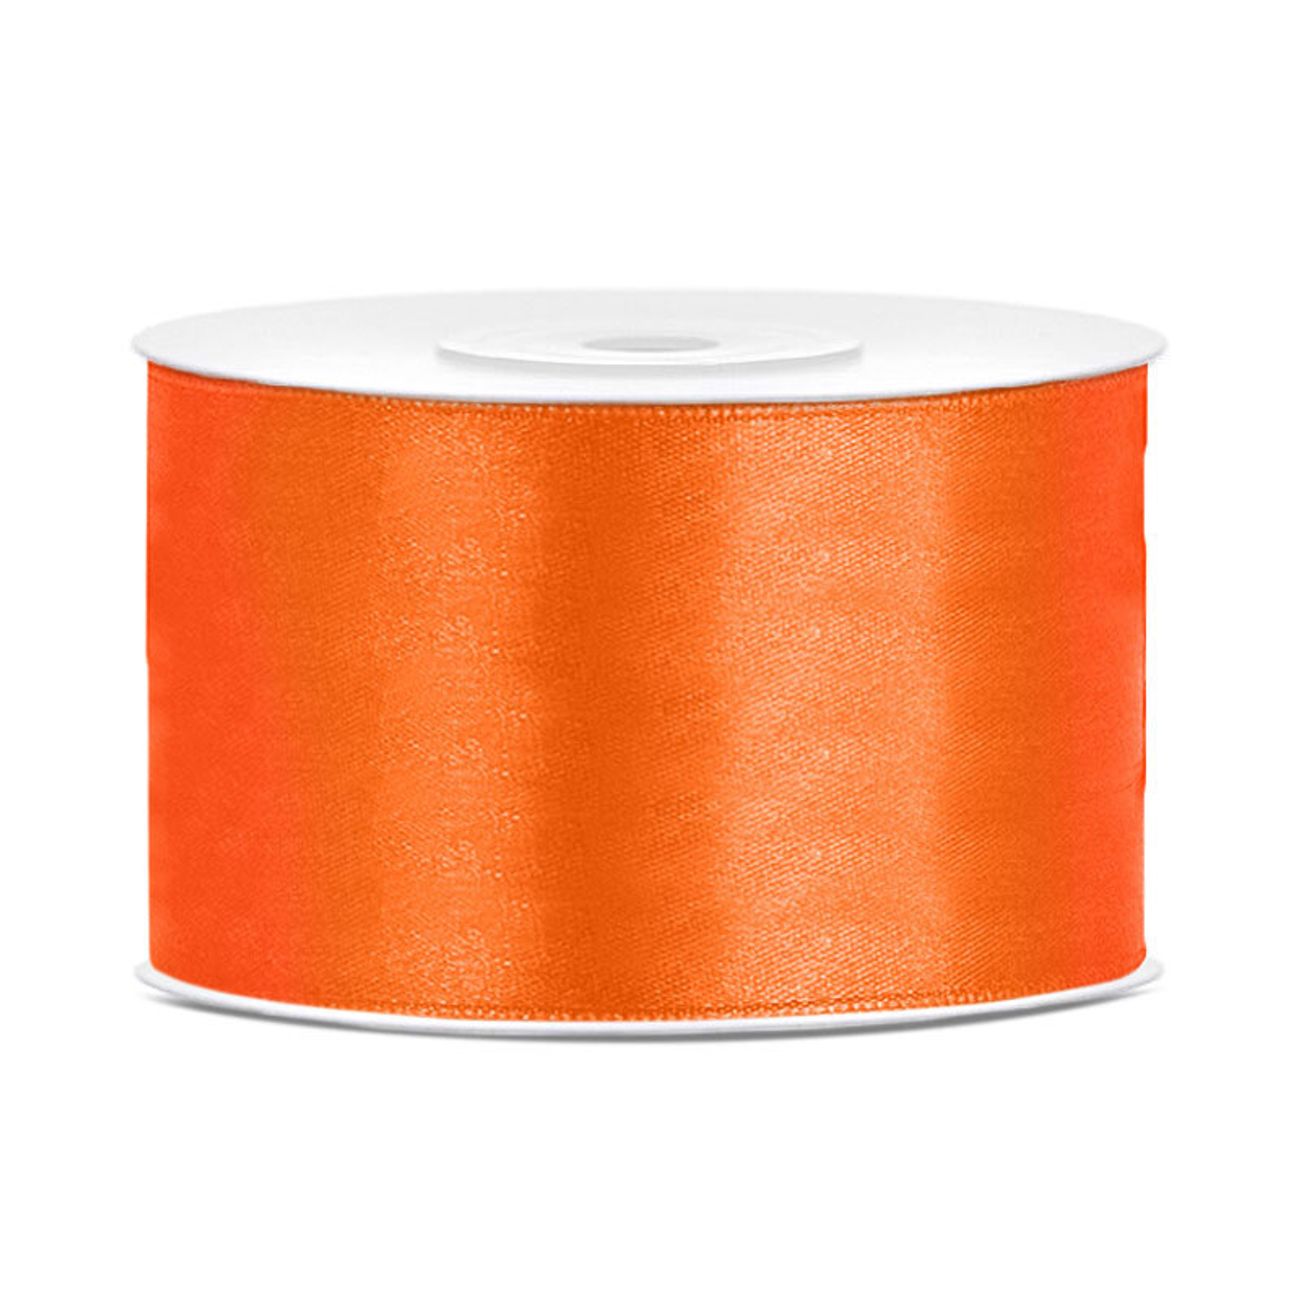 satinband-orange-44707-8